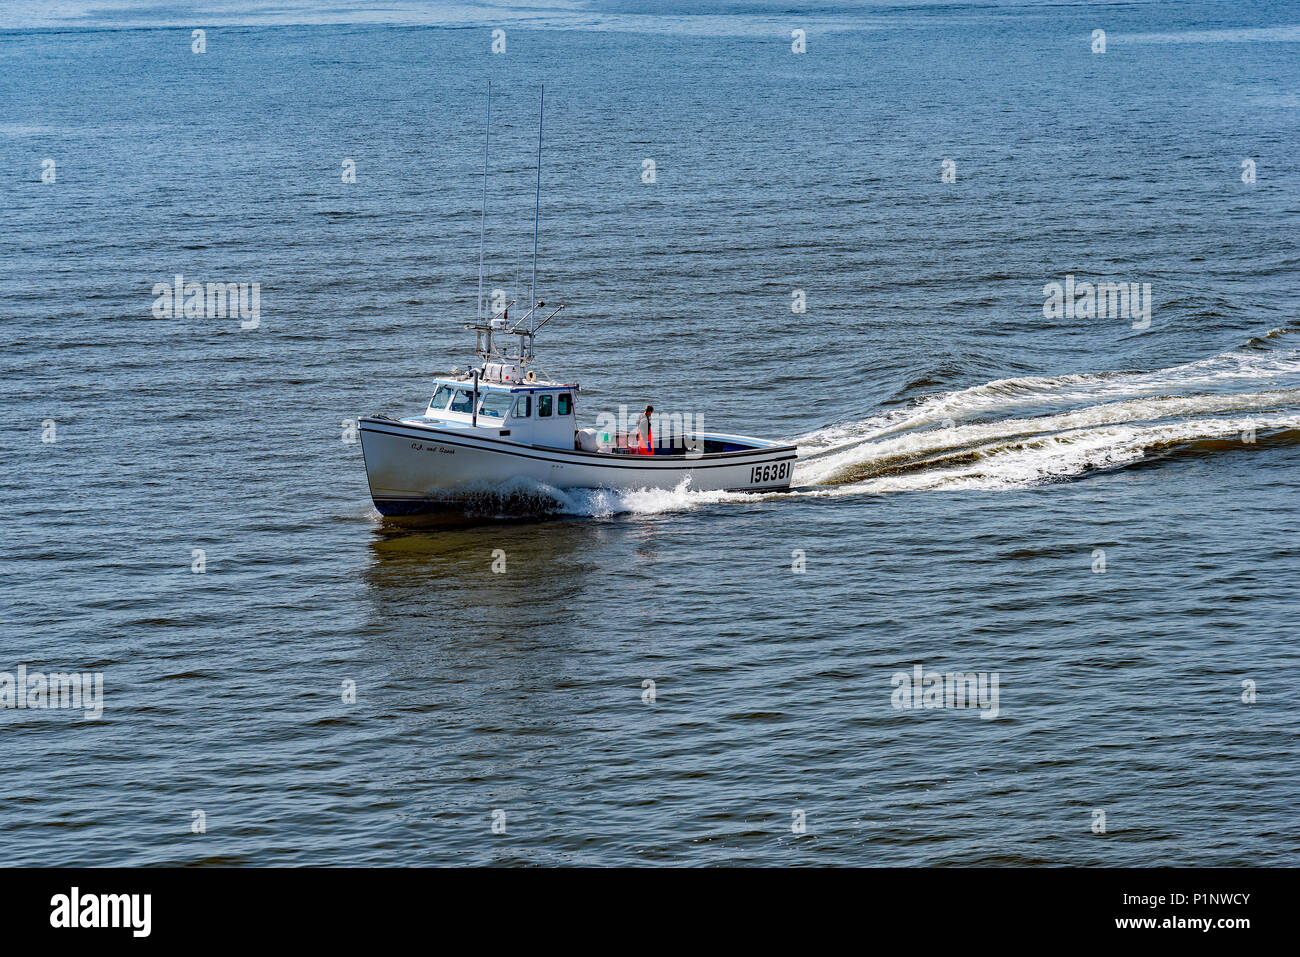 Lobster Boat aus Caribou, Nova Scotia, Kanada. Foto aus dem Wald Insel, P.E.I. zu Caribou, K.A. Fähre. Stockfoto